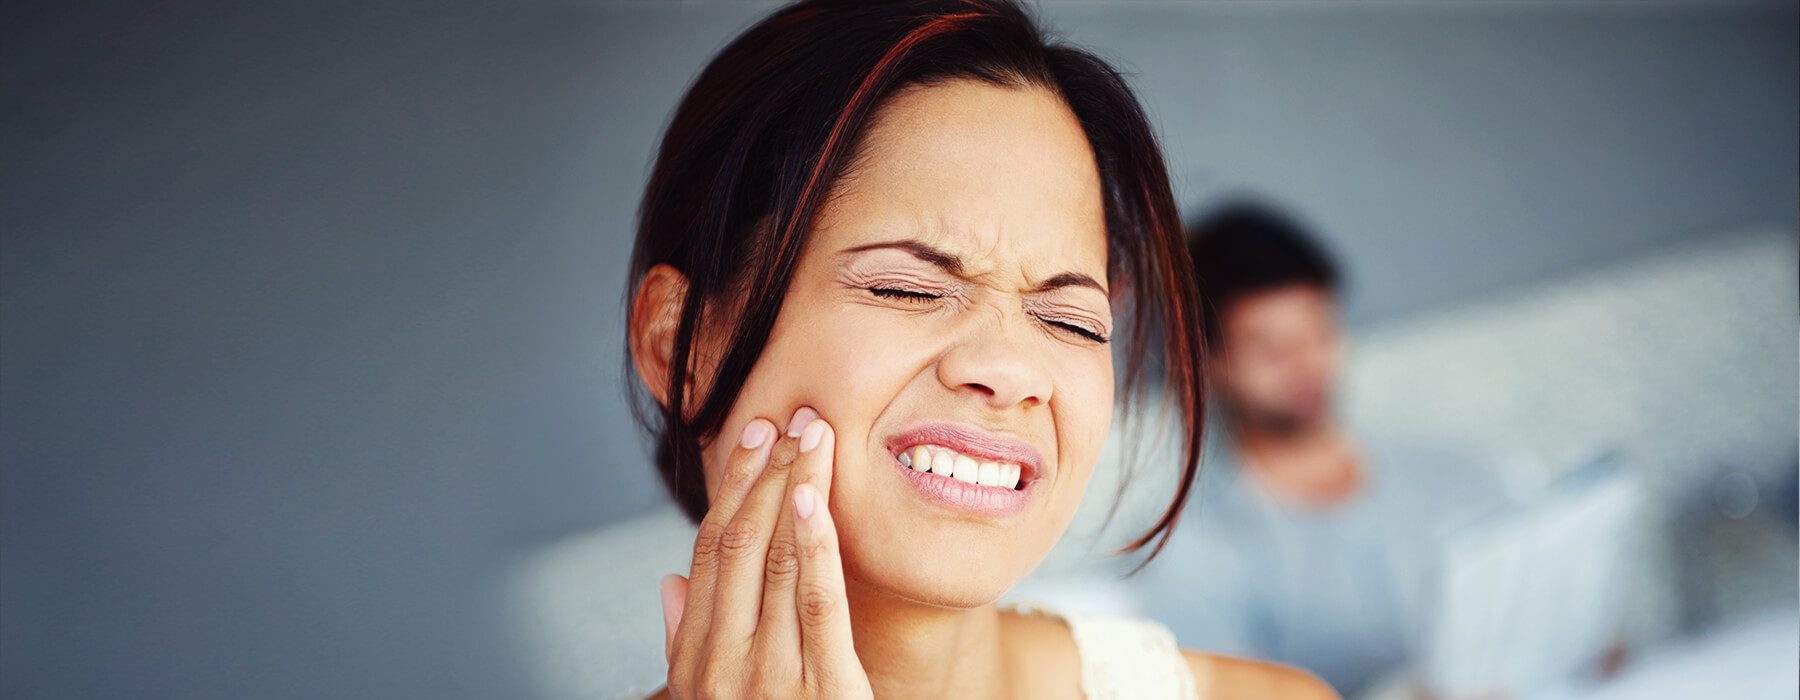 Can braces stop teeth grinding?